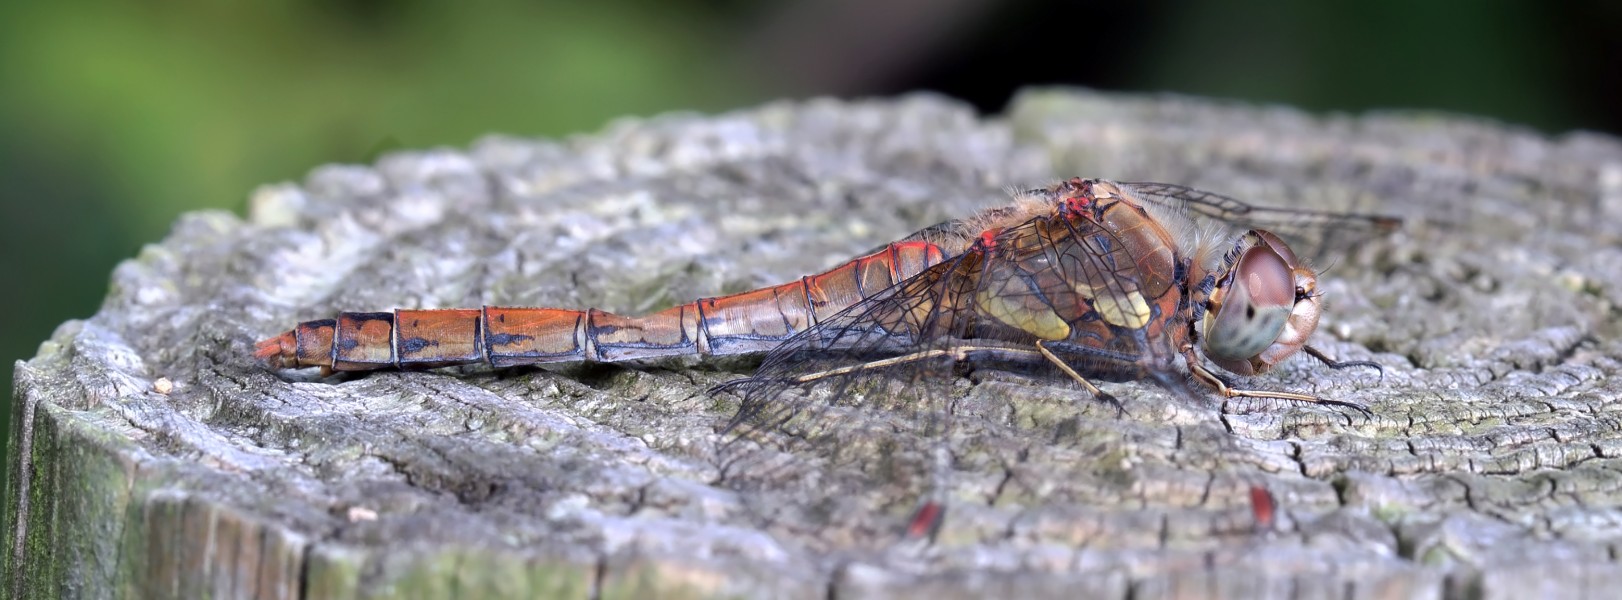 Sympetrum striolatum, Common Darter, Female, dragonfly